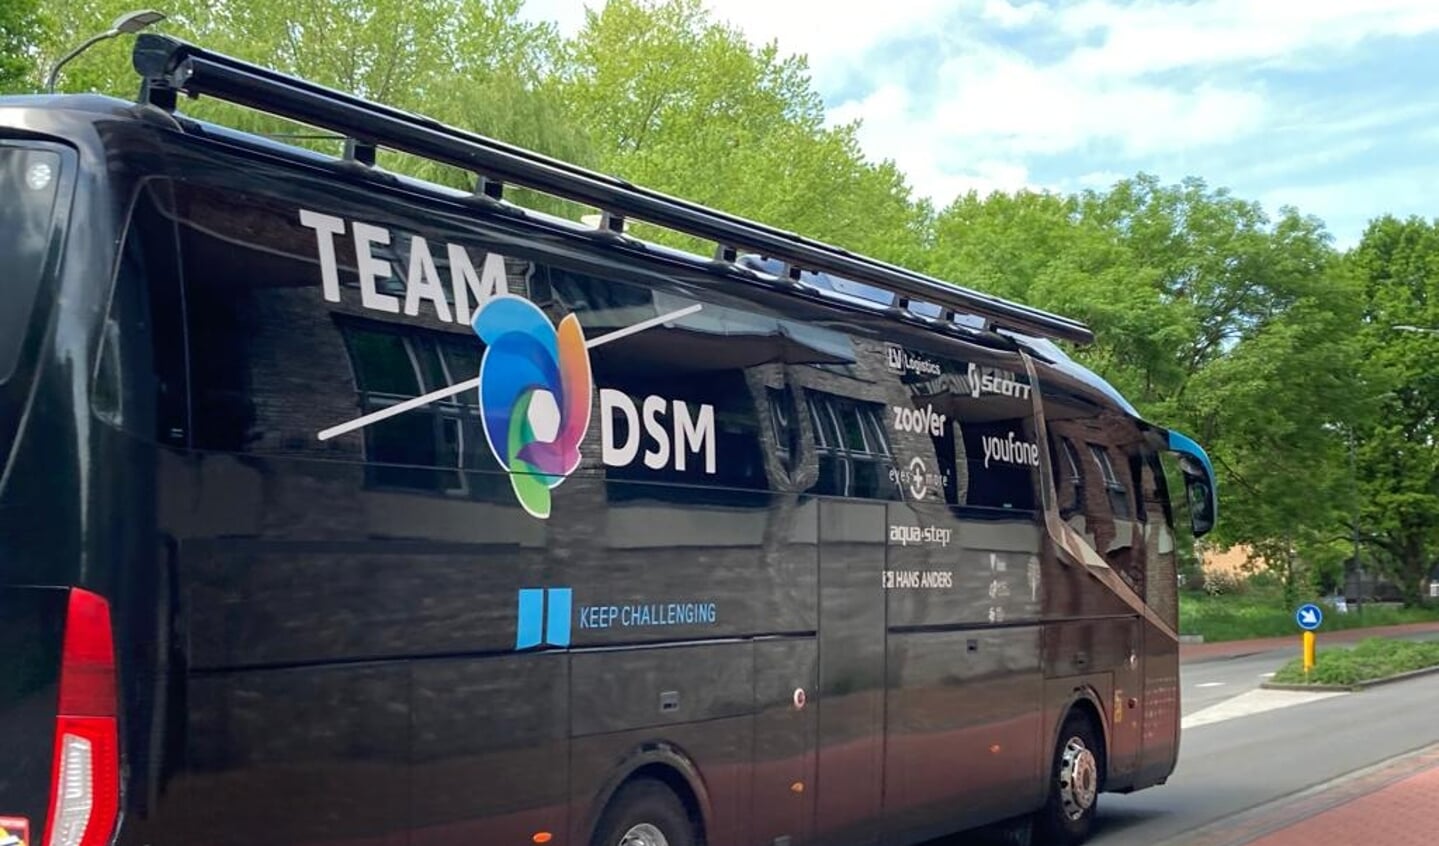 De bus van TeamDSM brengt de wielrensters naar het centrum van Veenendaal voor de start voor de vrouwenwedstrijd.